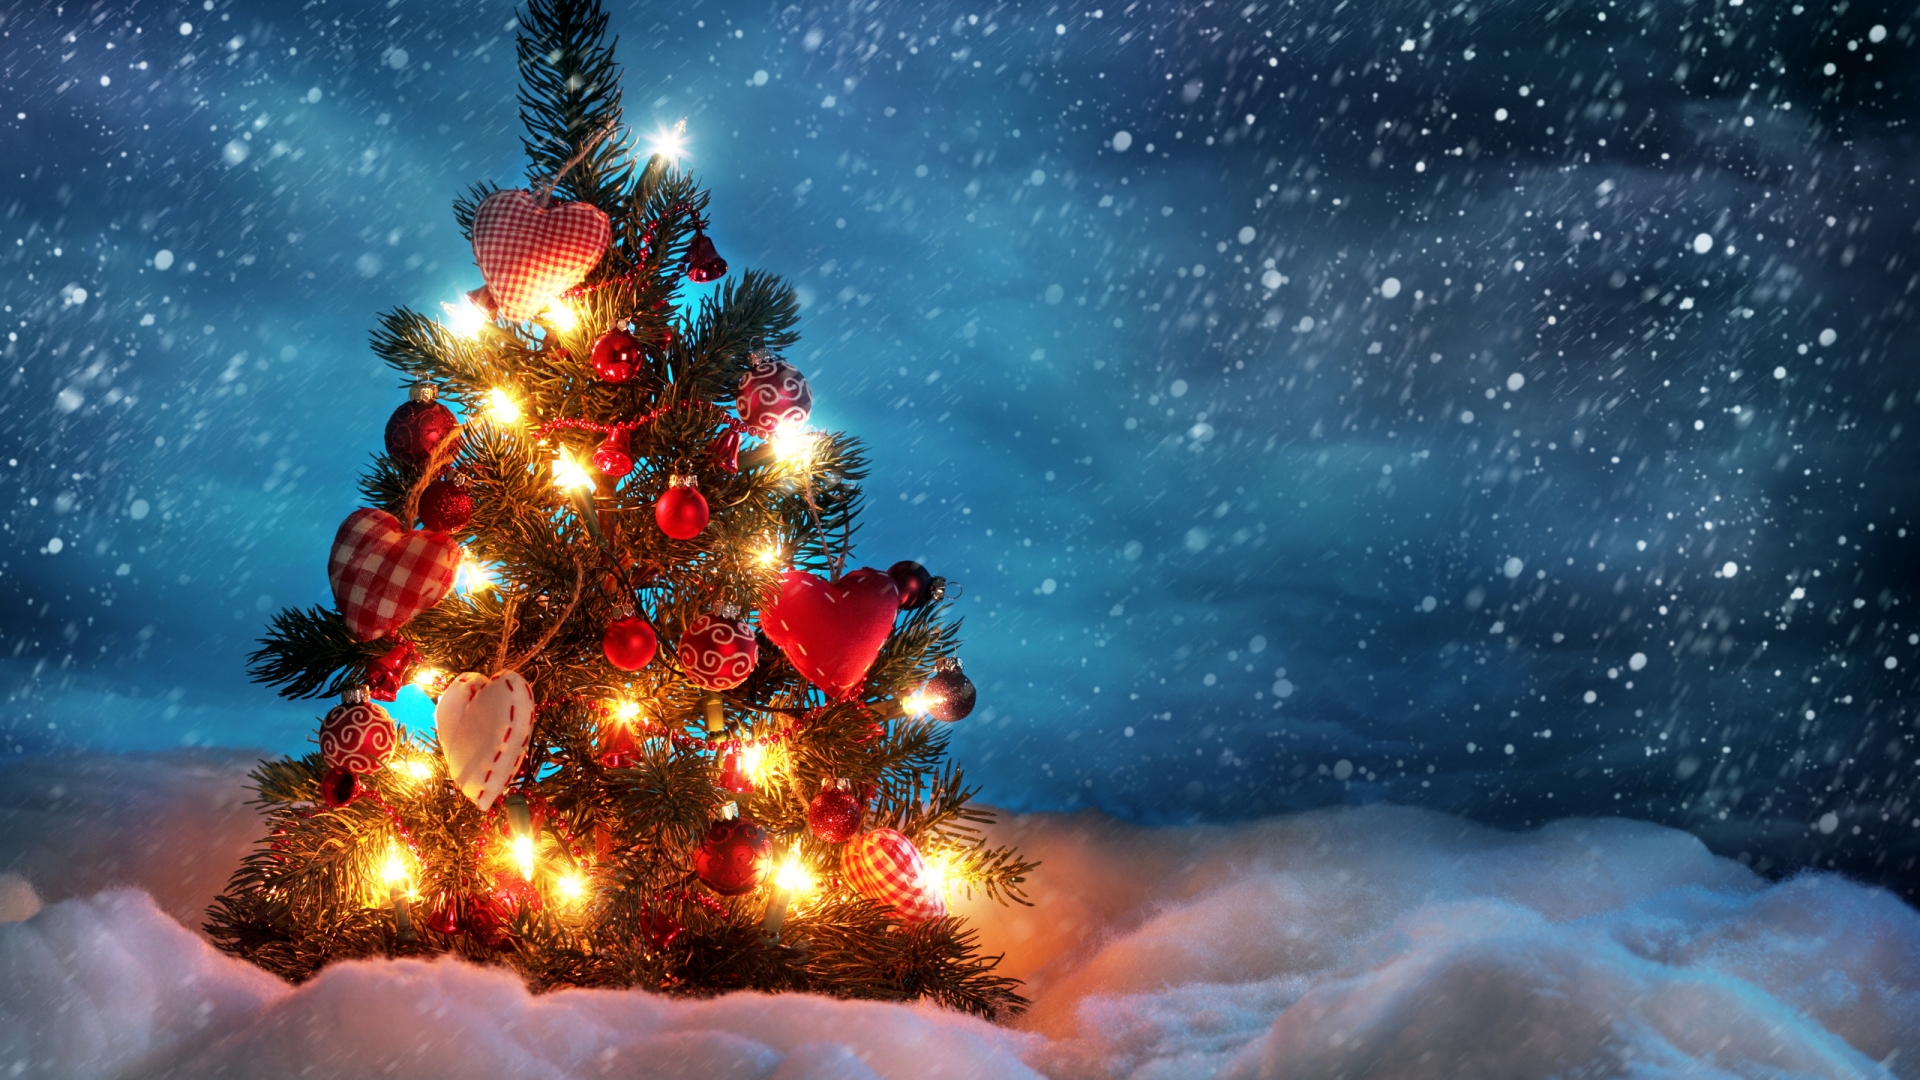 Lovely Christmas Tree for 1920 x 1080 HDTV 1080p resolution